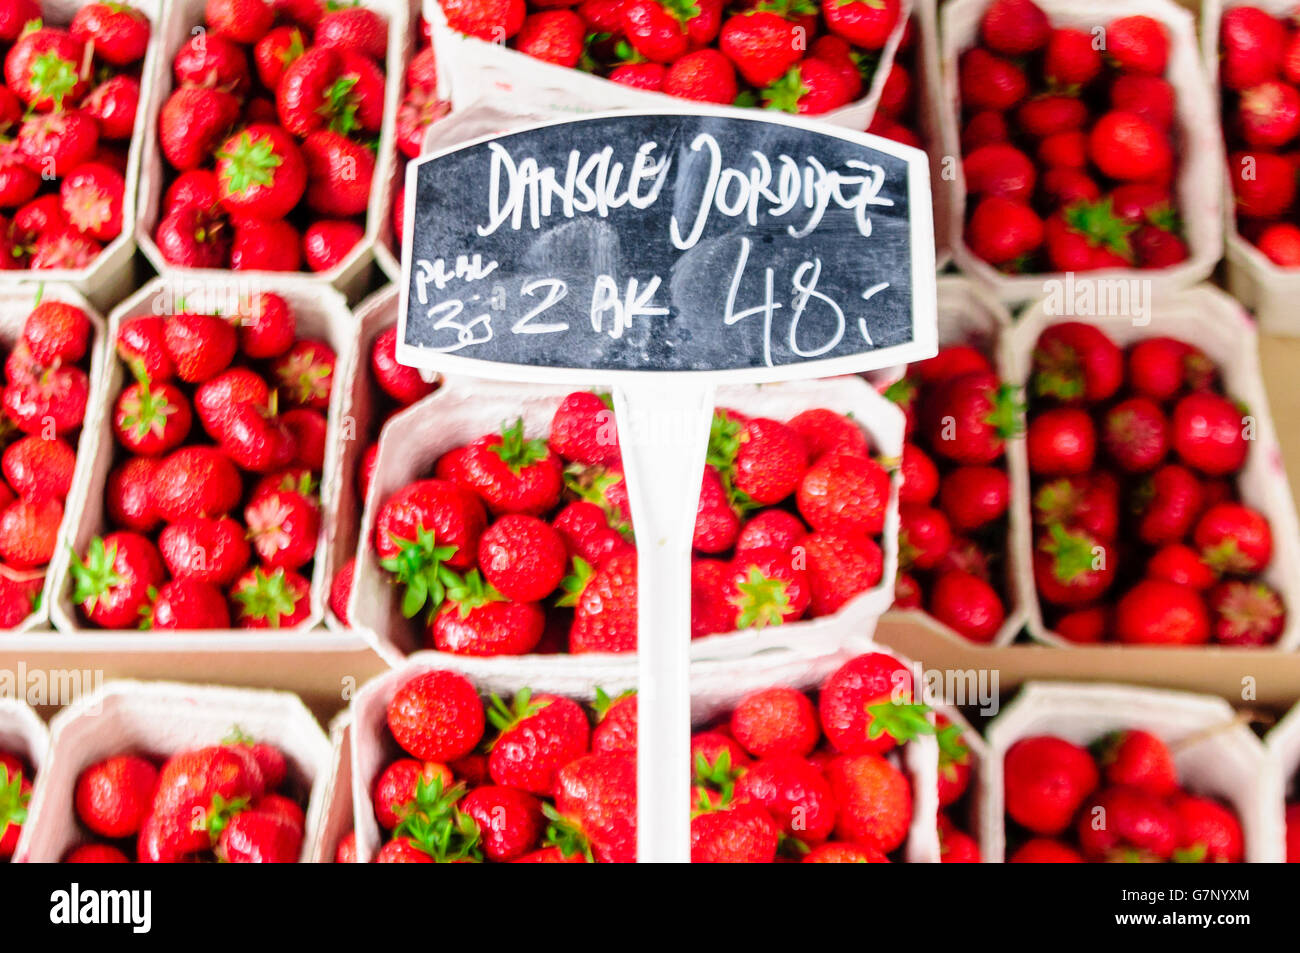 Vente de fraises danois at a market stall Banque D'Images